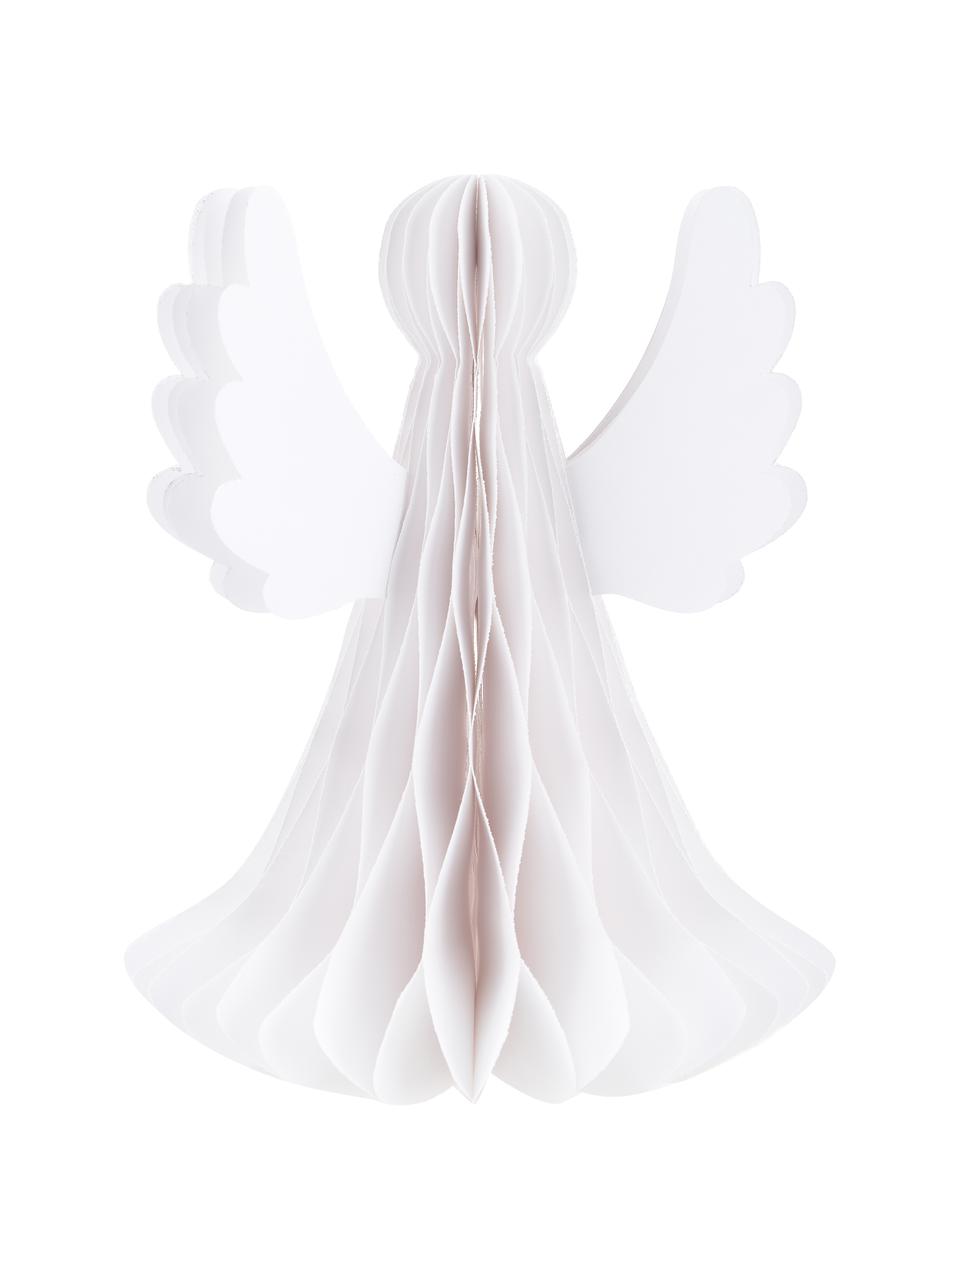 Deko-Objekt Angel in Weiss, Papier, Weiss, Ø 21 x H 27 cm